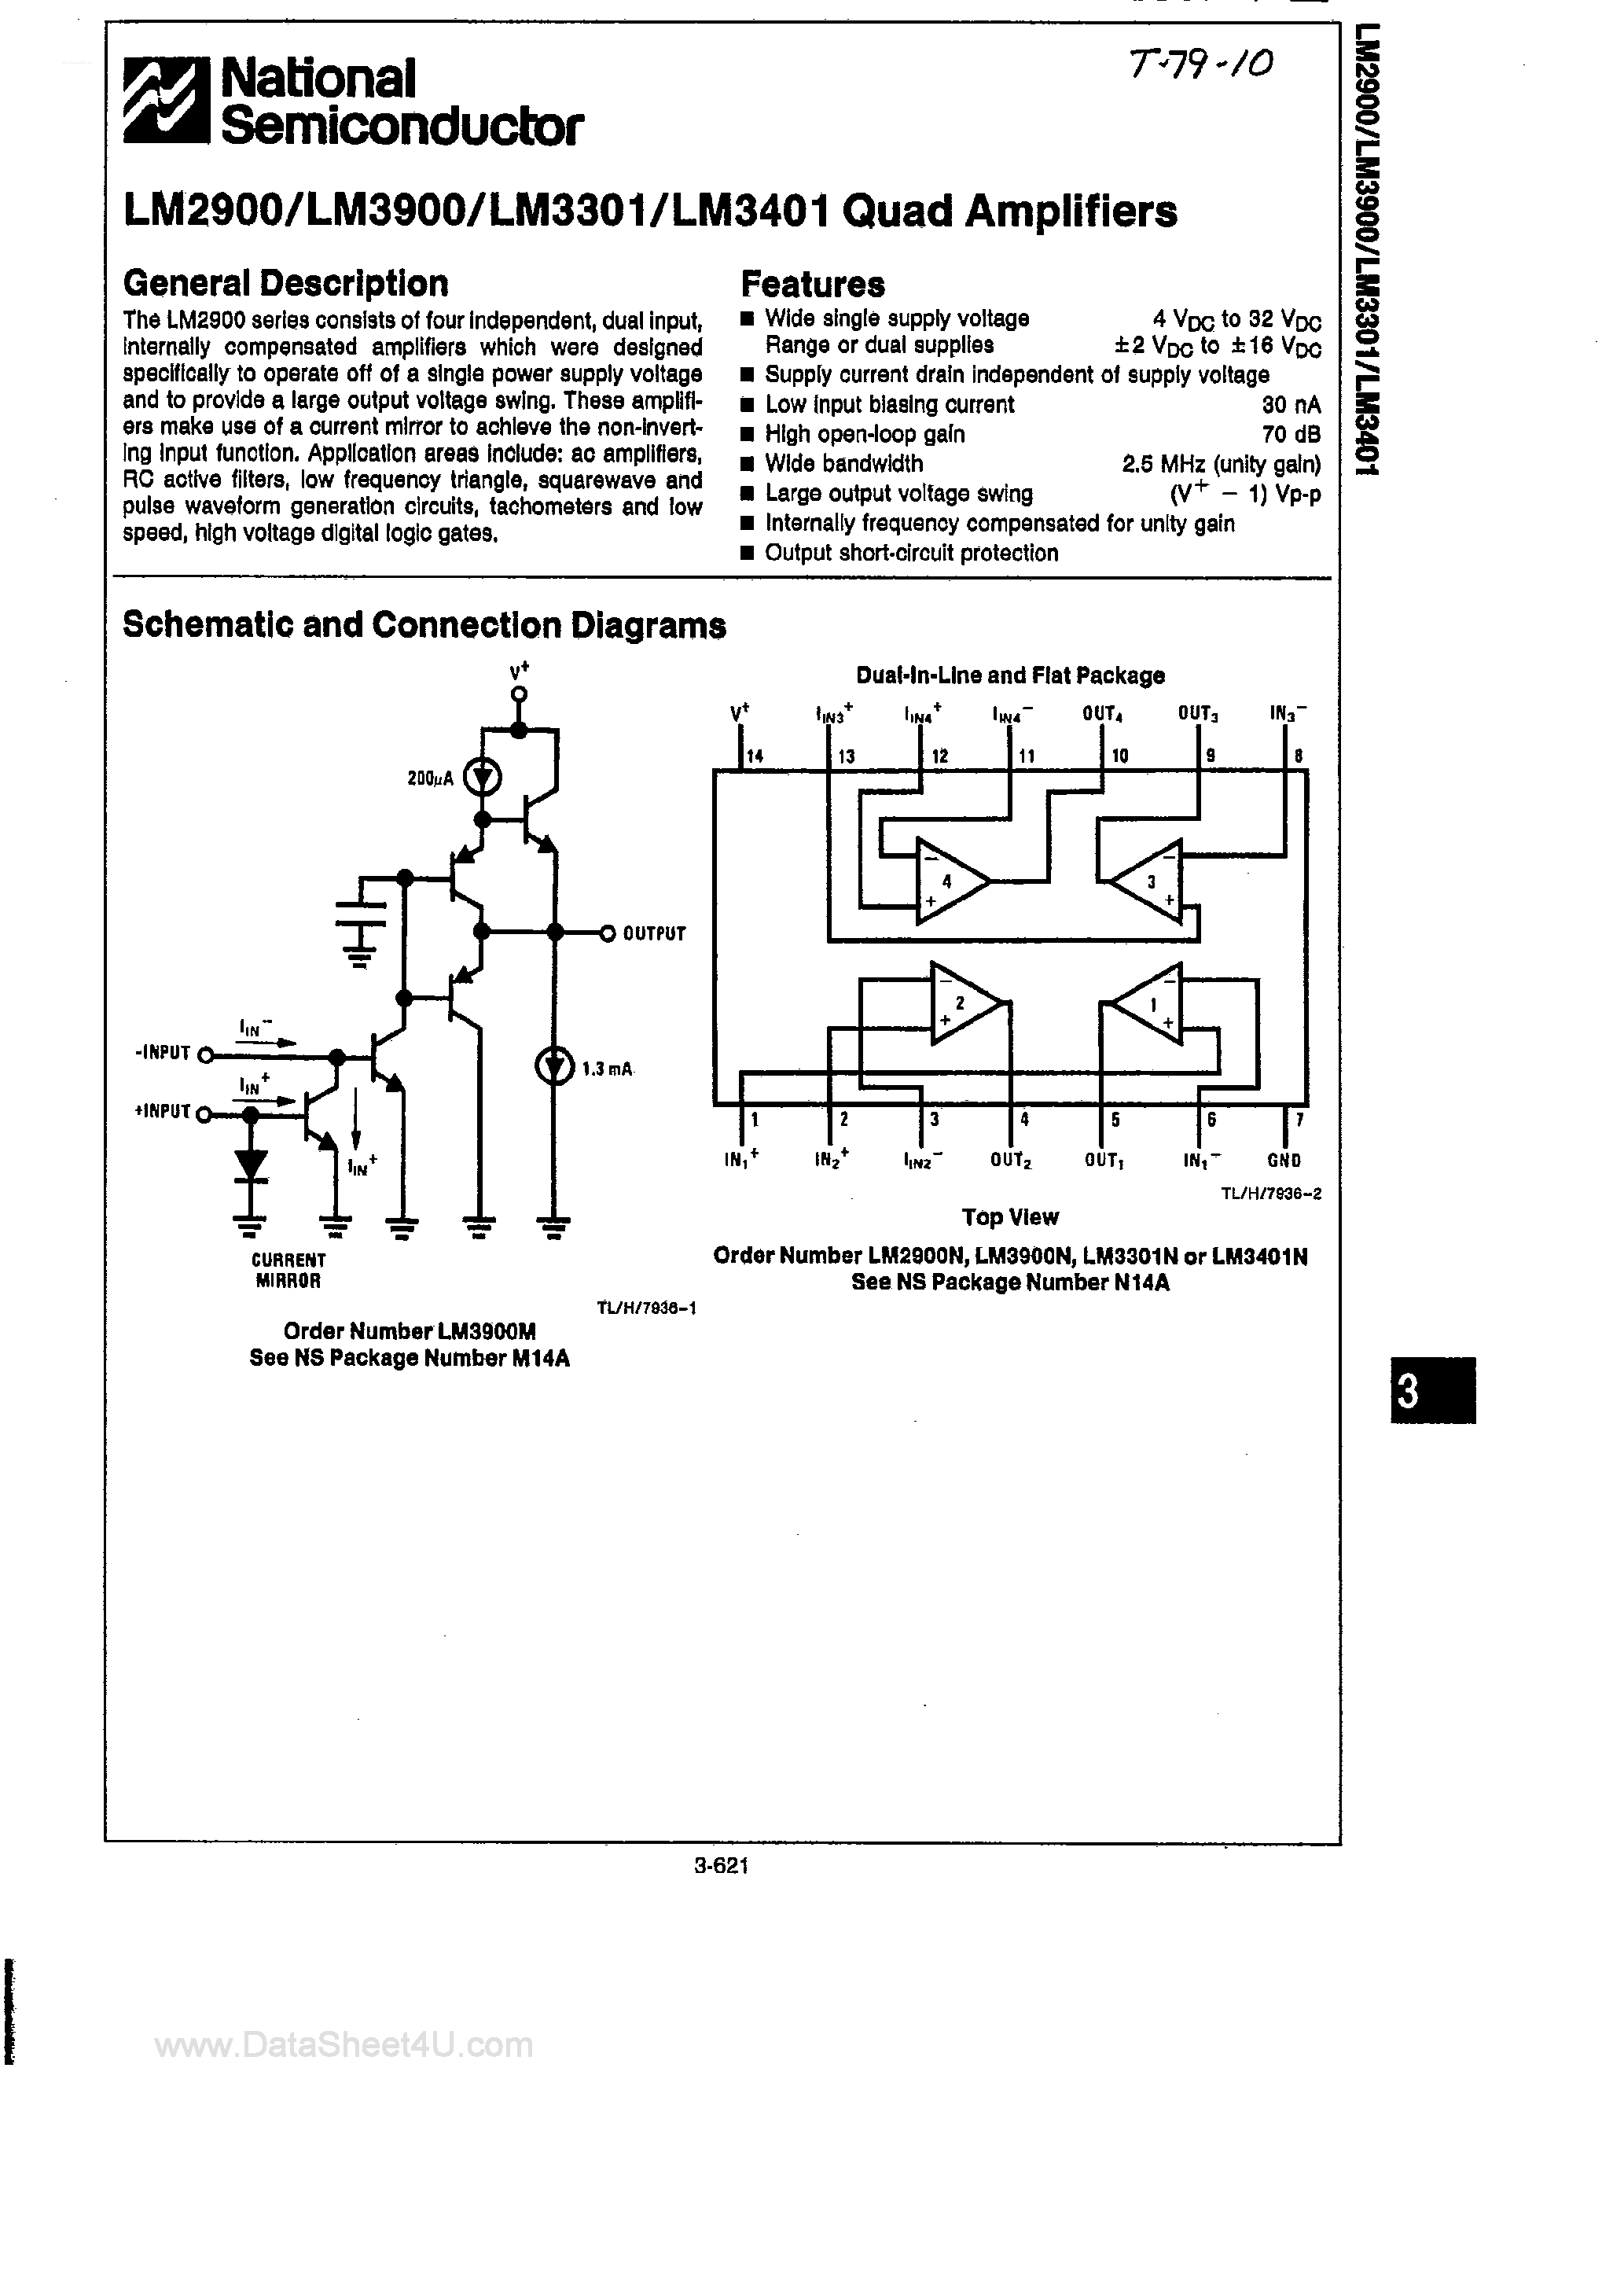 Даташит LM3401-(LM3900 / LM3901 / LM3401) Quad Amplifiers страница 1